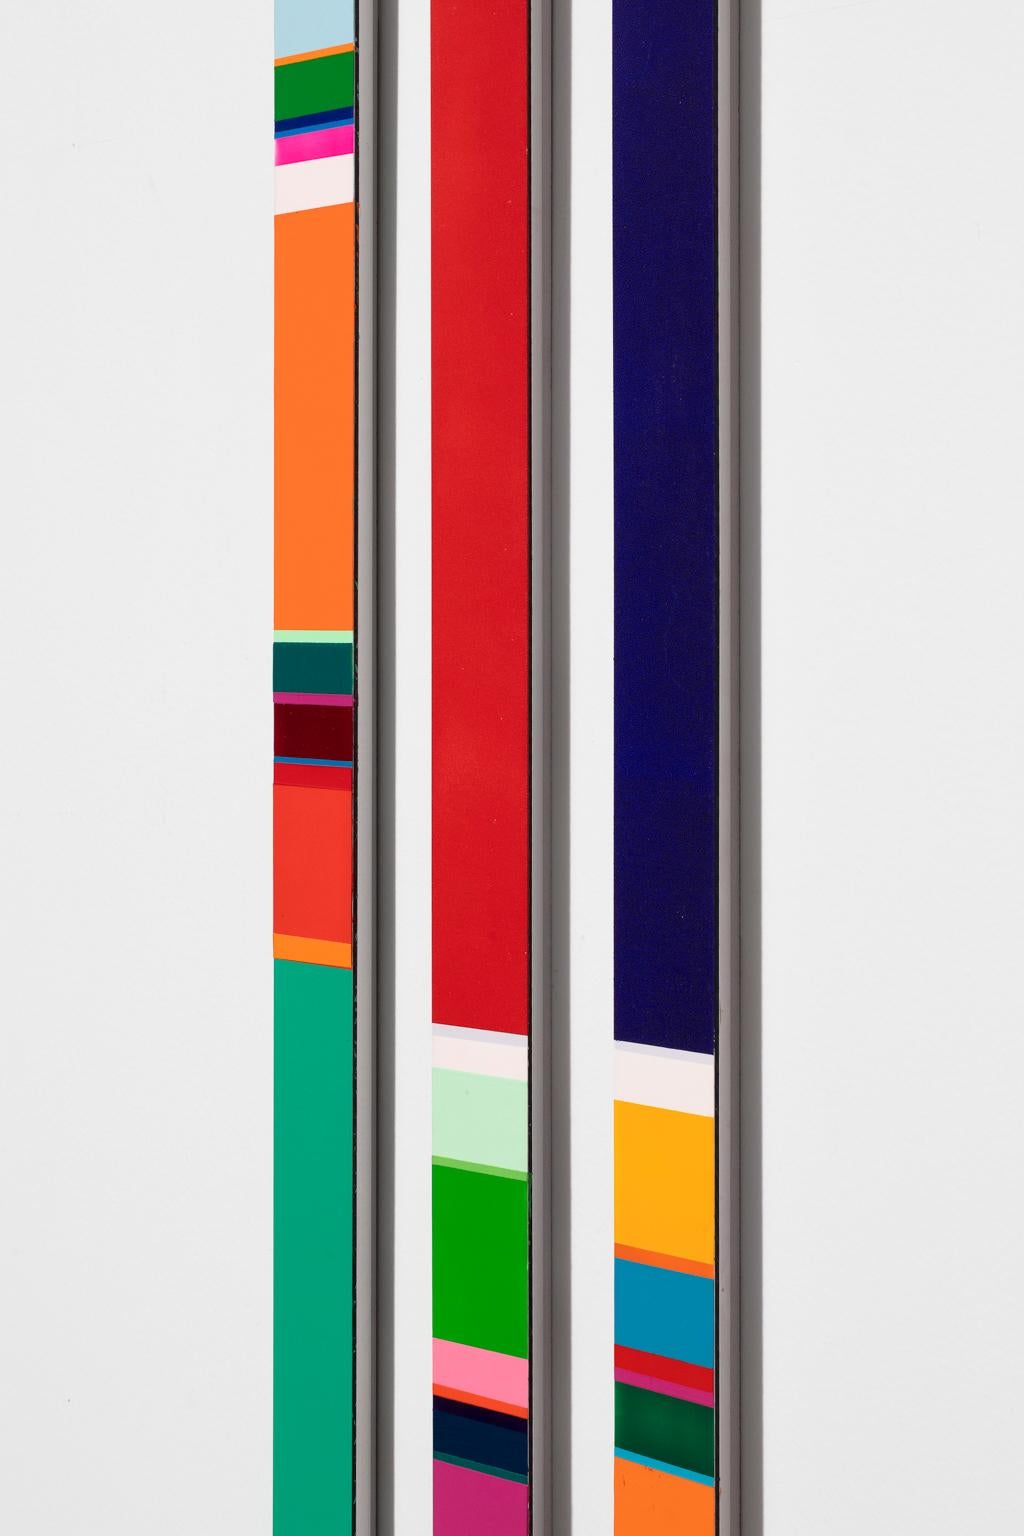 Nicholas Bodde Triptych Color Field on Aluminum  For Sale 4